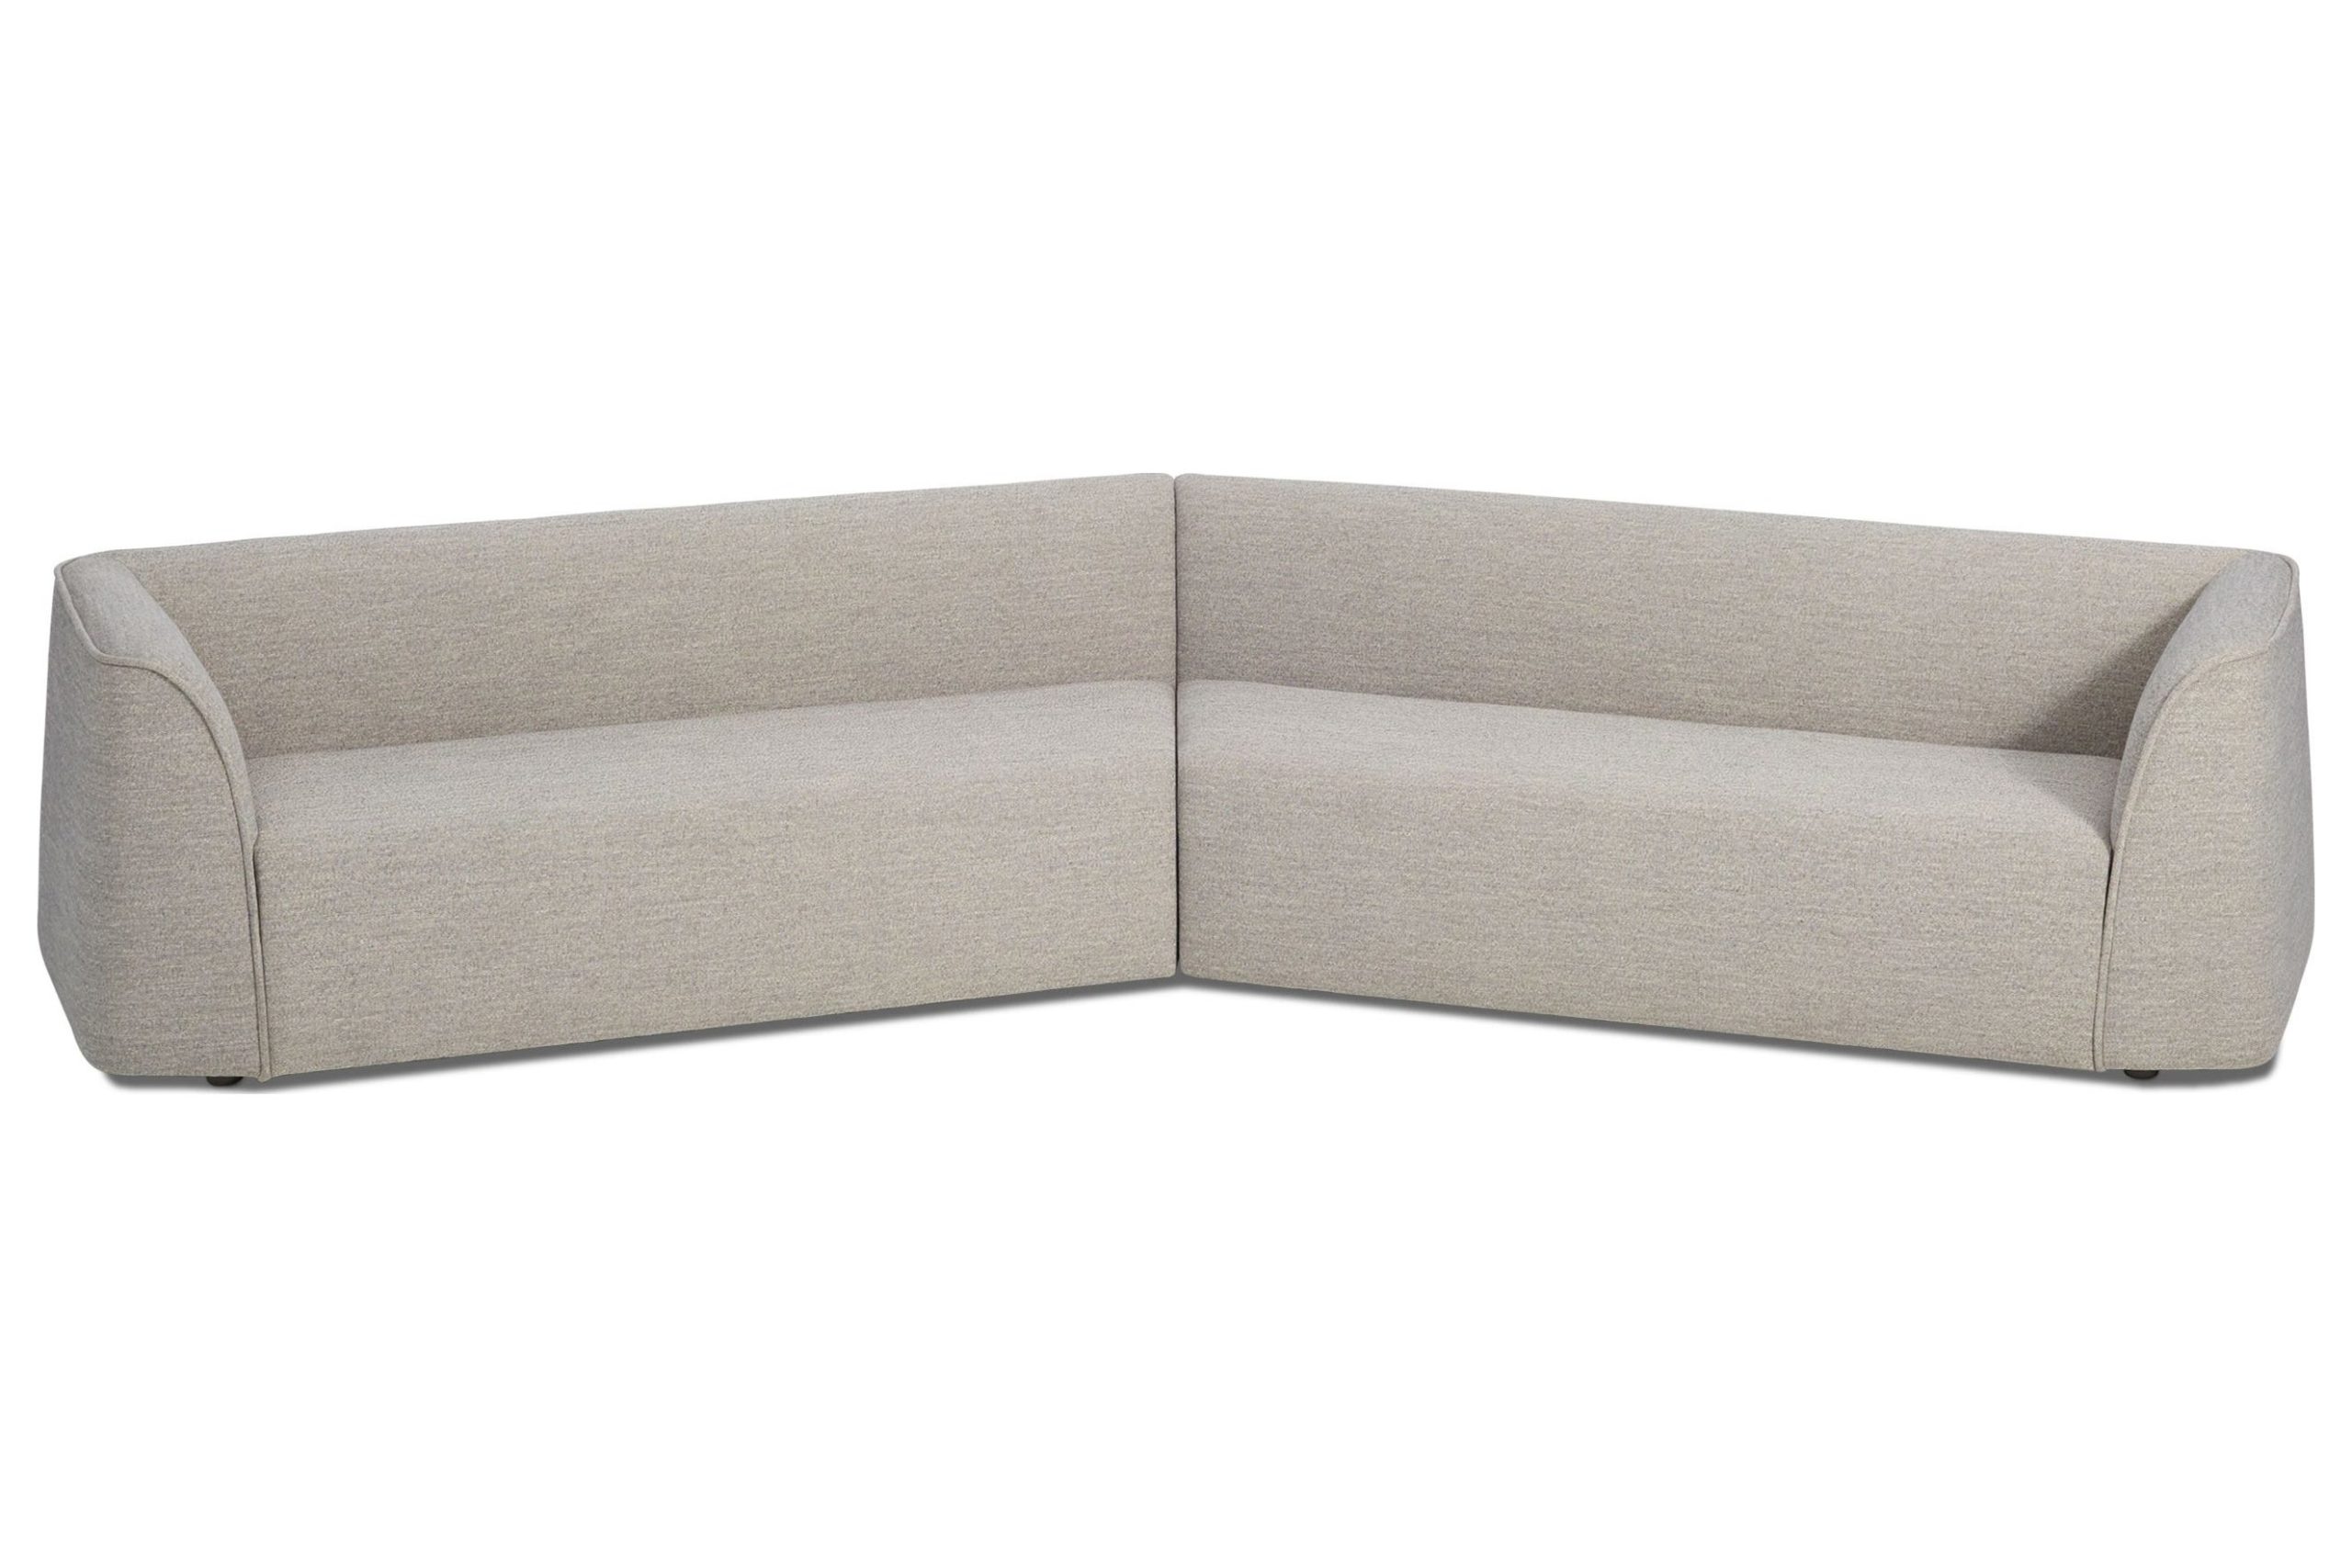 Thataway Angled Sectional Sofa, Blu Dot